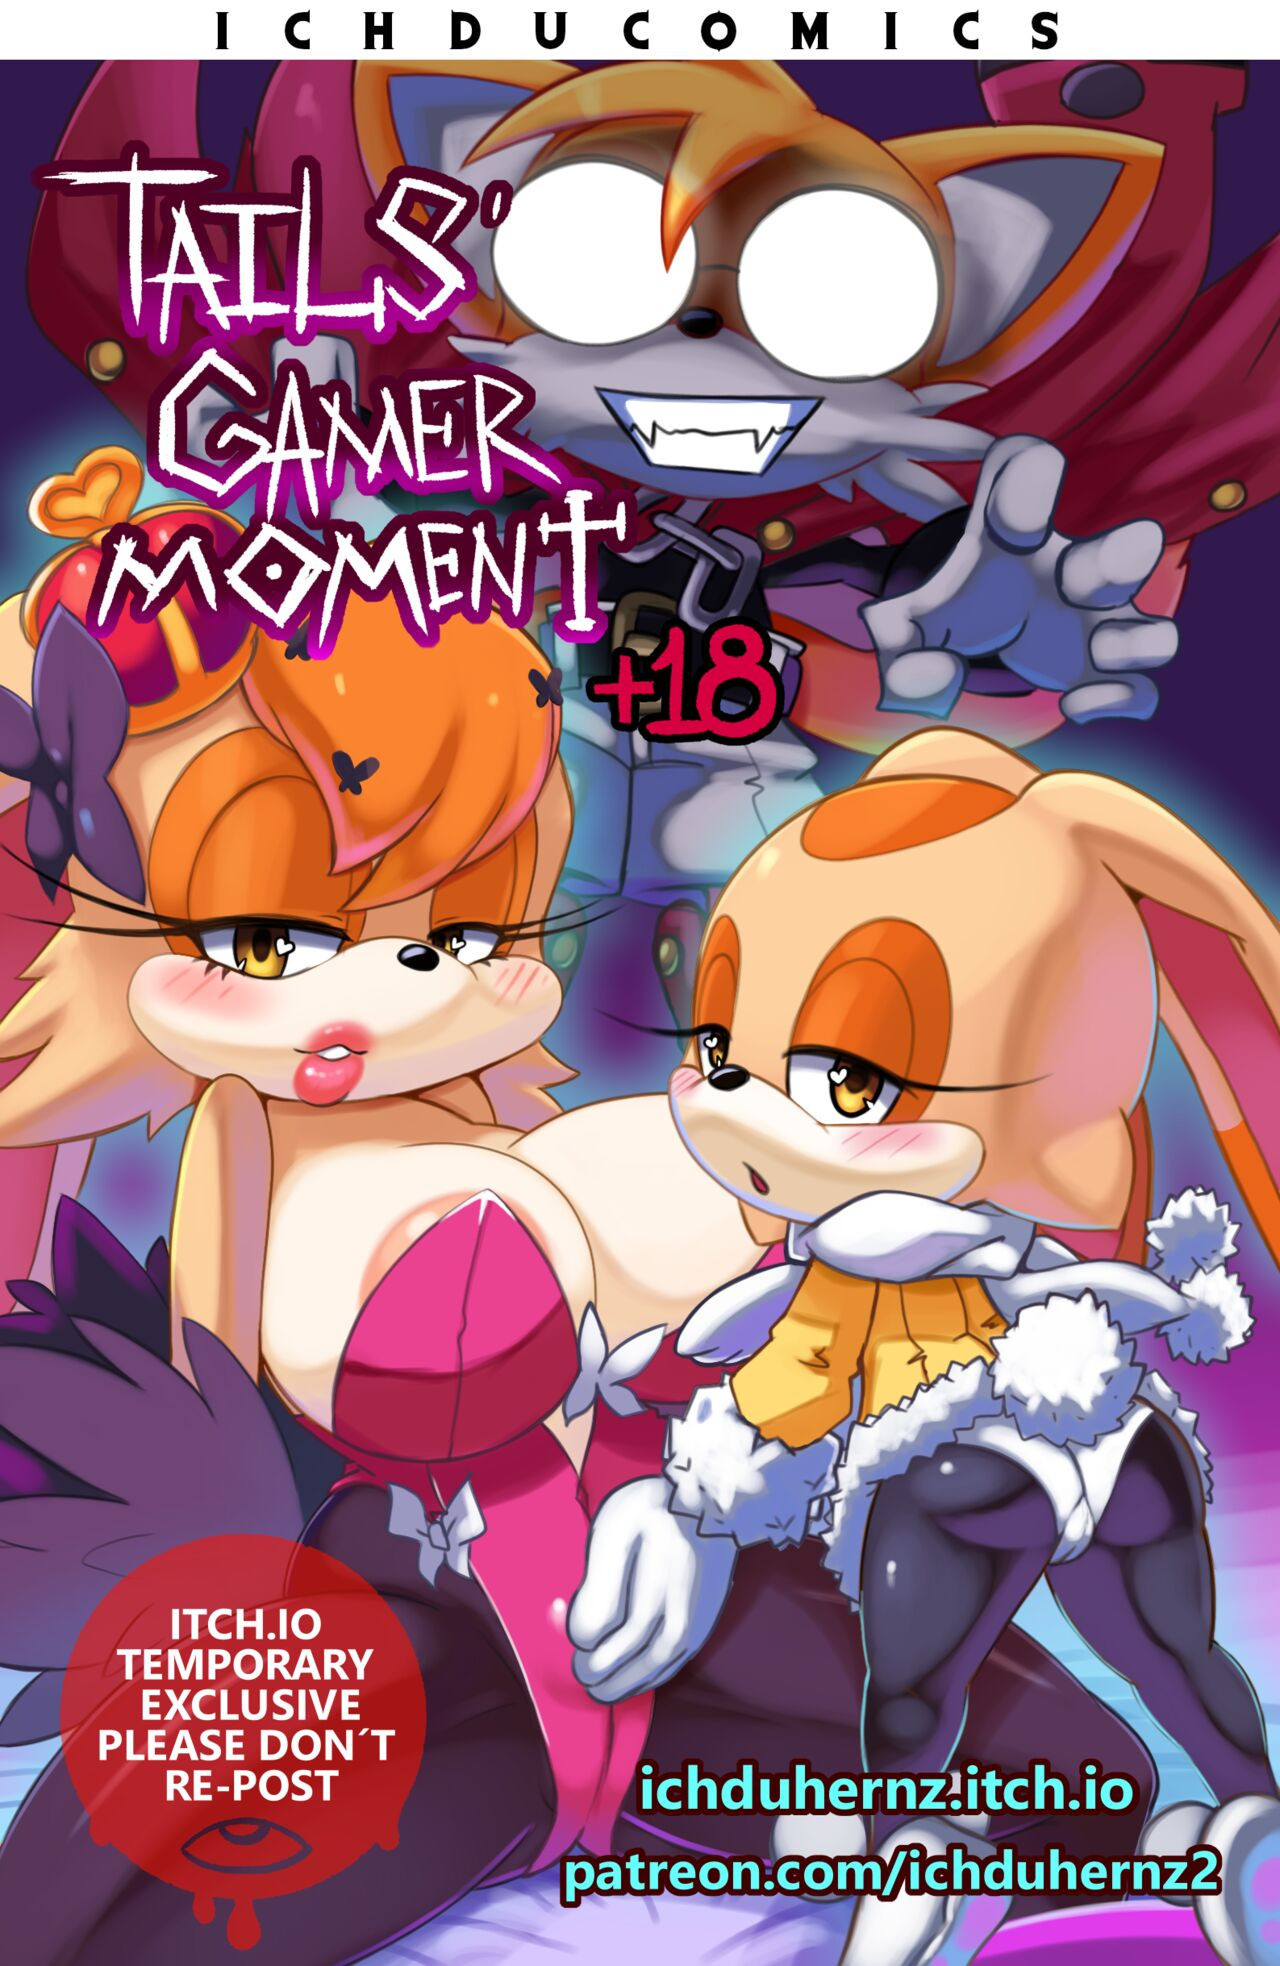 Tails' Gamer Moment - Page 1 - 9hentai - Hentai Manga, Read Hentai, Doujin  Manga